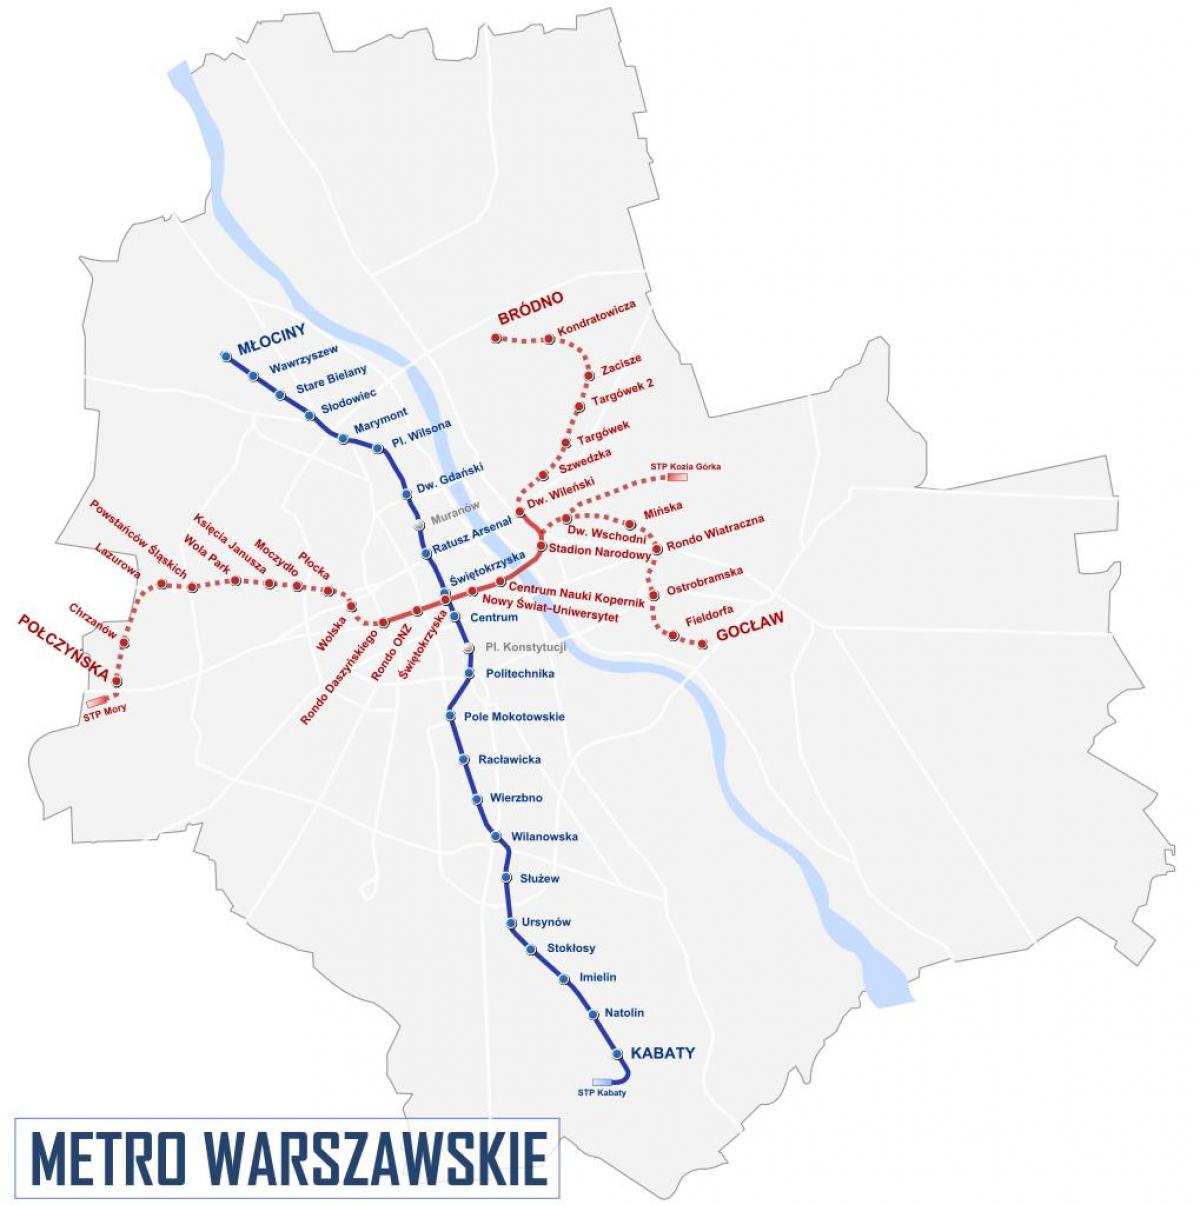 Warsaw metro 2016